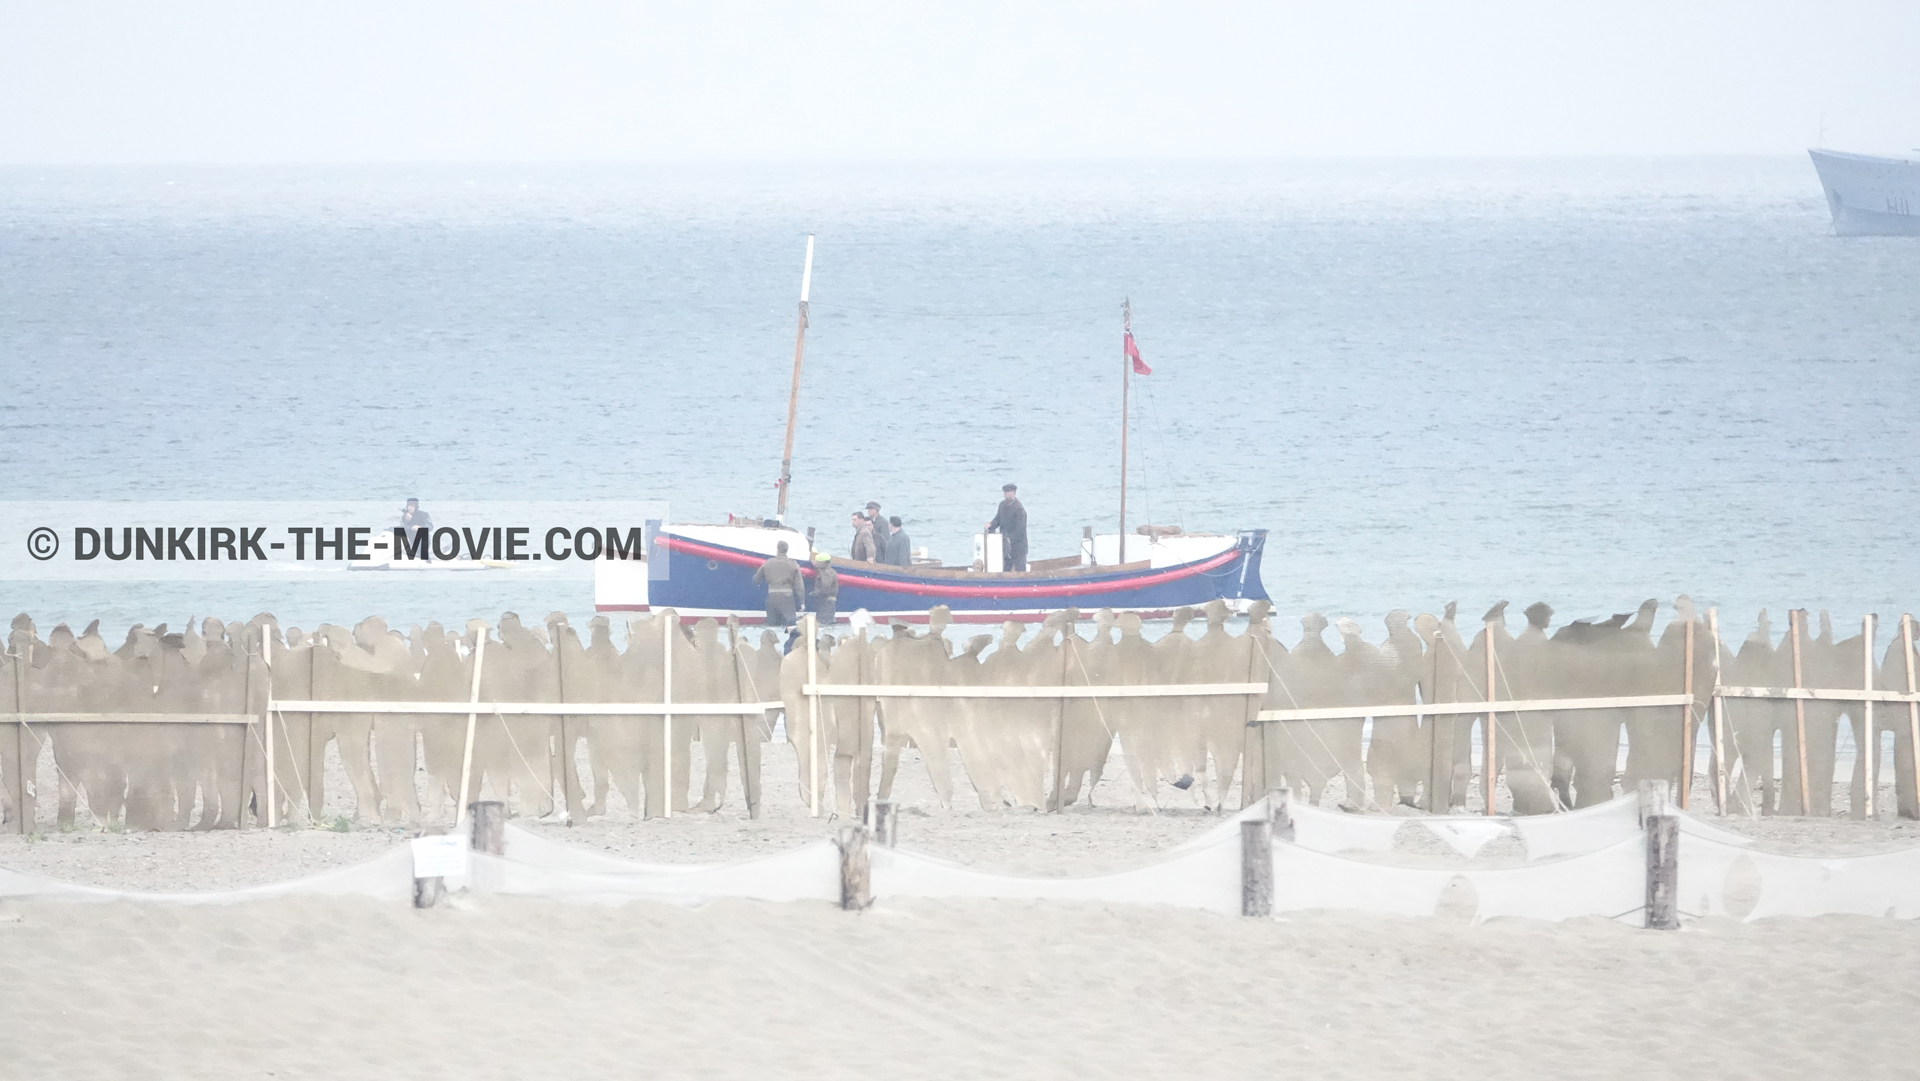 Fotos con barco, playa, del bote salvavidas Henry Finlay,  durante el rodaje de la película Dunkerque de Nolan